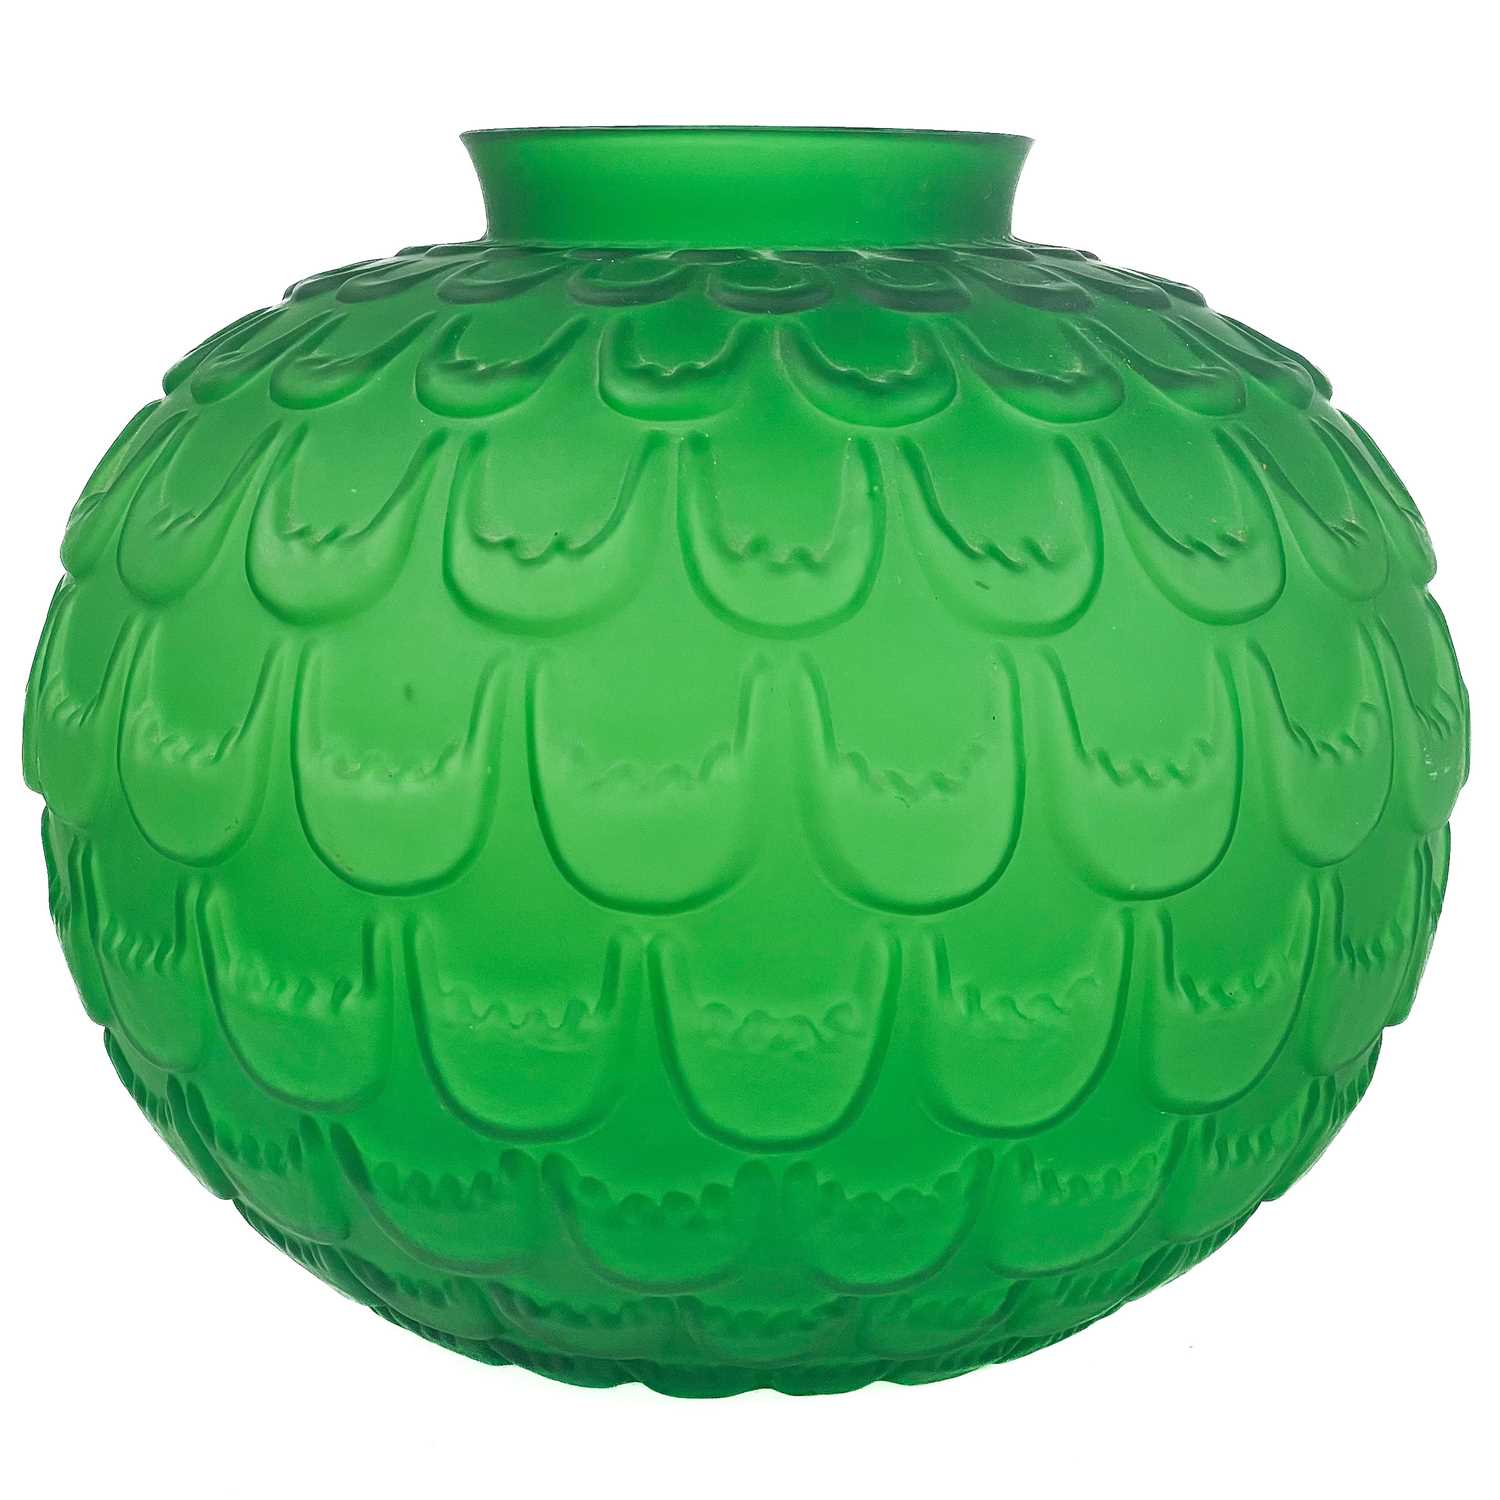 Lot 547 - An Art glass green lotus flower spherical vase.